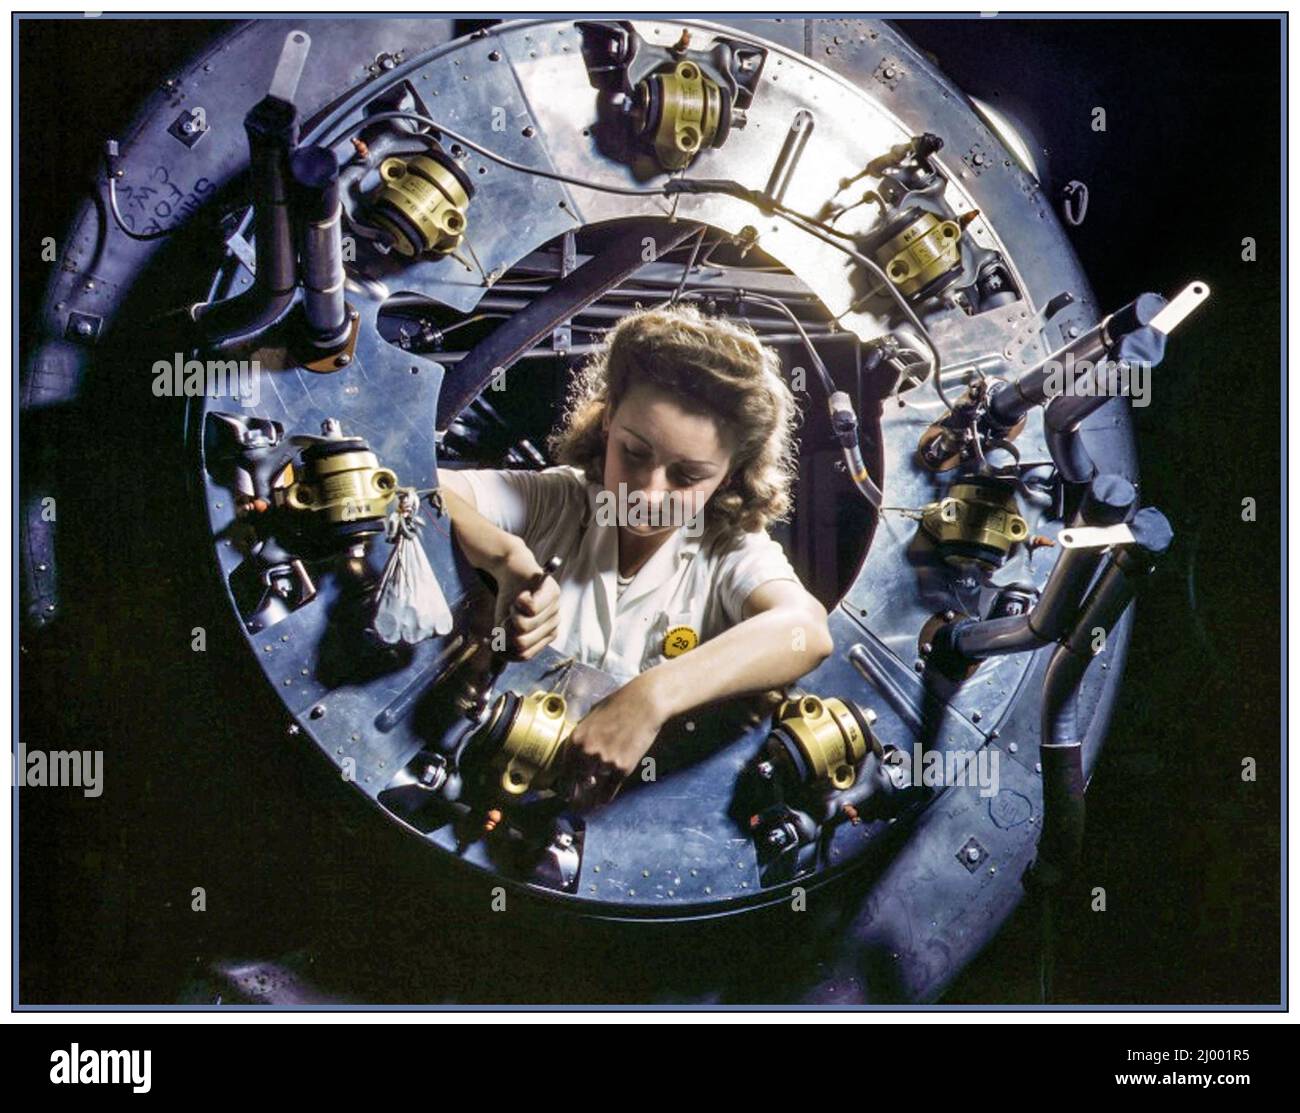 WAR WORK WOMAN AVIATION INDUSTRY WW2 image couleur américaine de la Seconde Guerre mondiale : une employée assemble le moteur du bombardier nord-américain B-25 Mitchell dans une usine militaire d'Inglewood, Californie. Deuxième Guerre mondiale Inglewood, Californie, États-Unis octobre 1942 Banque D'Images